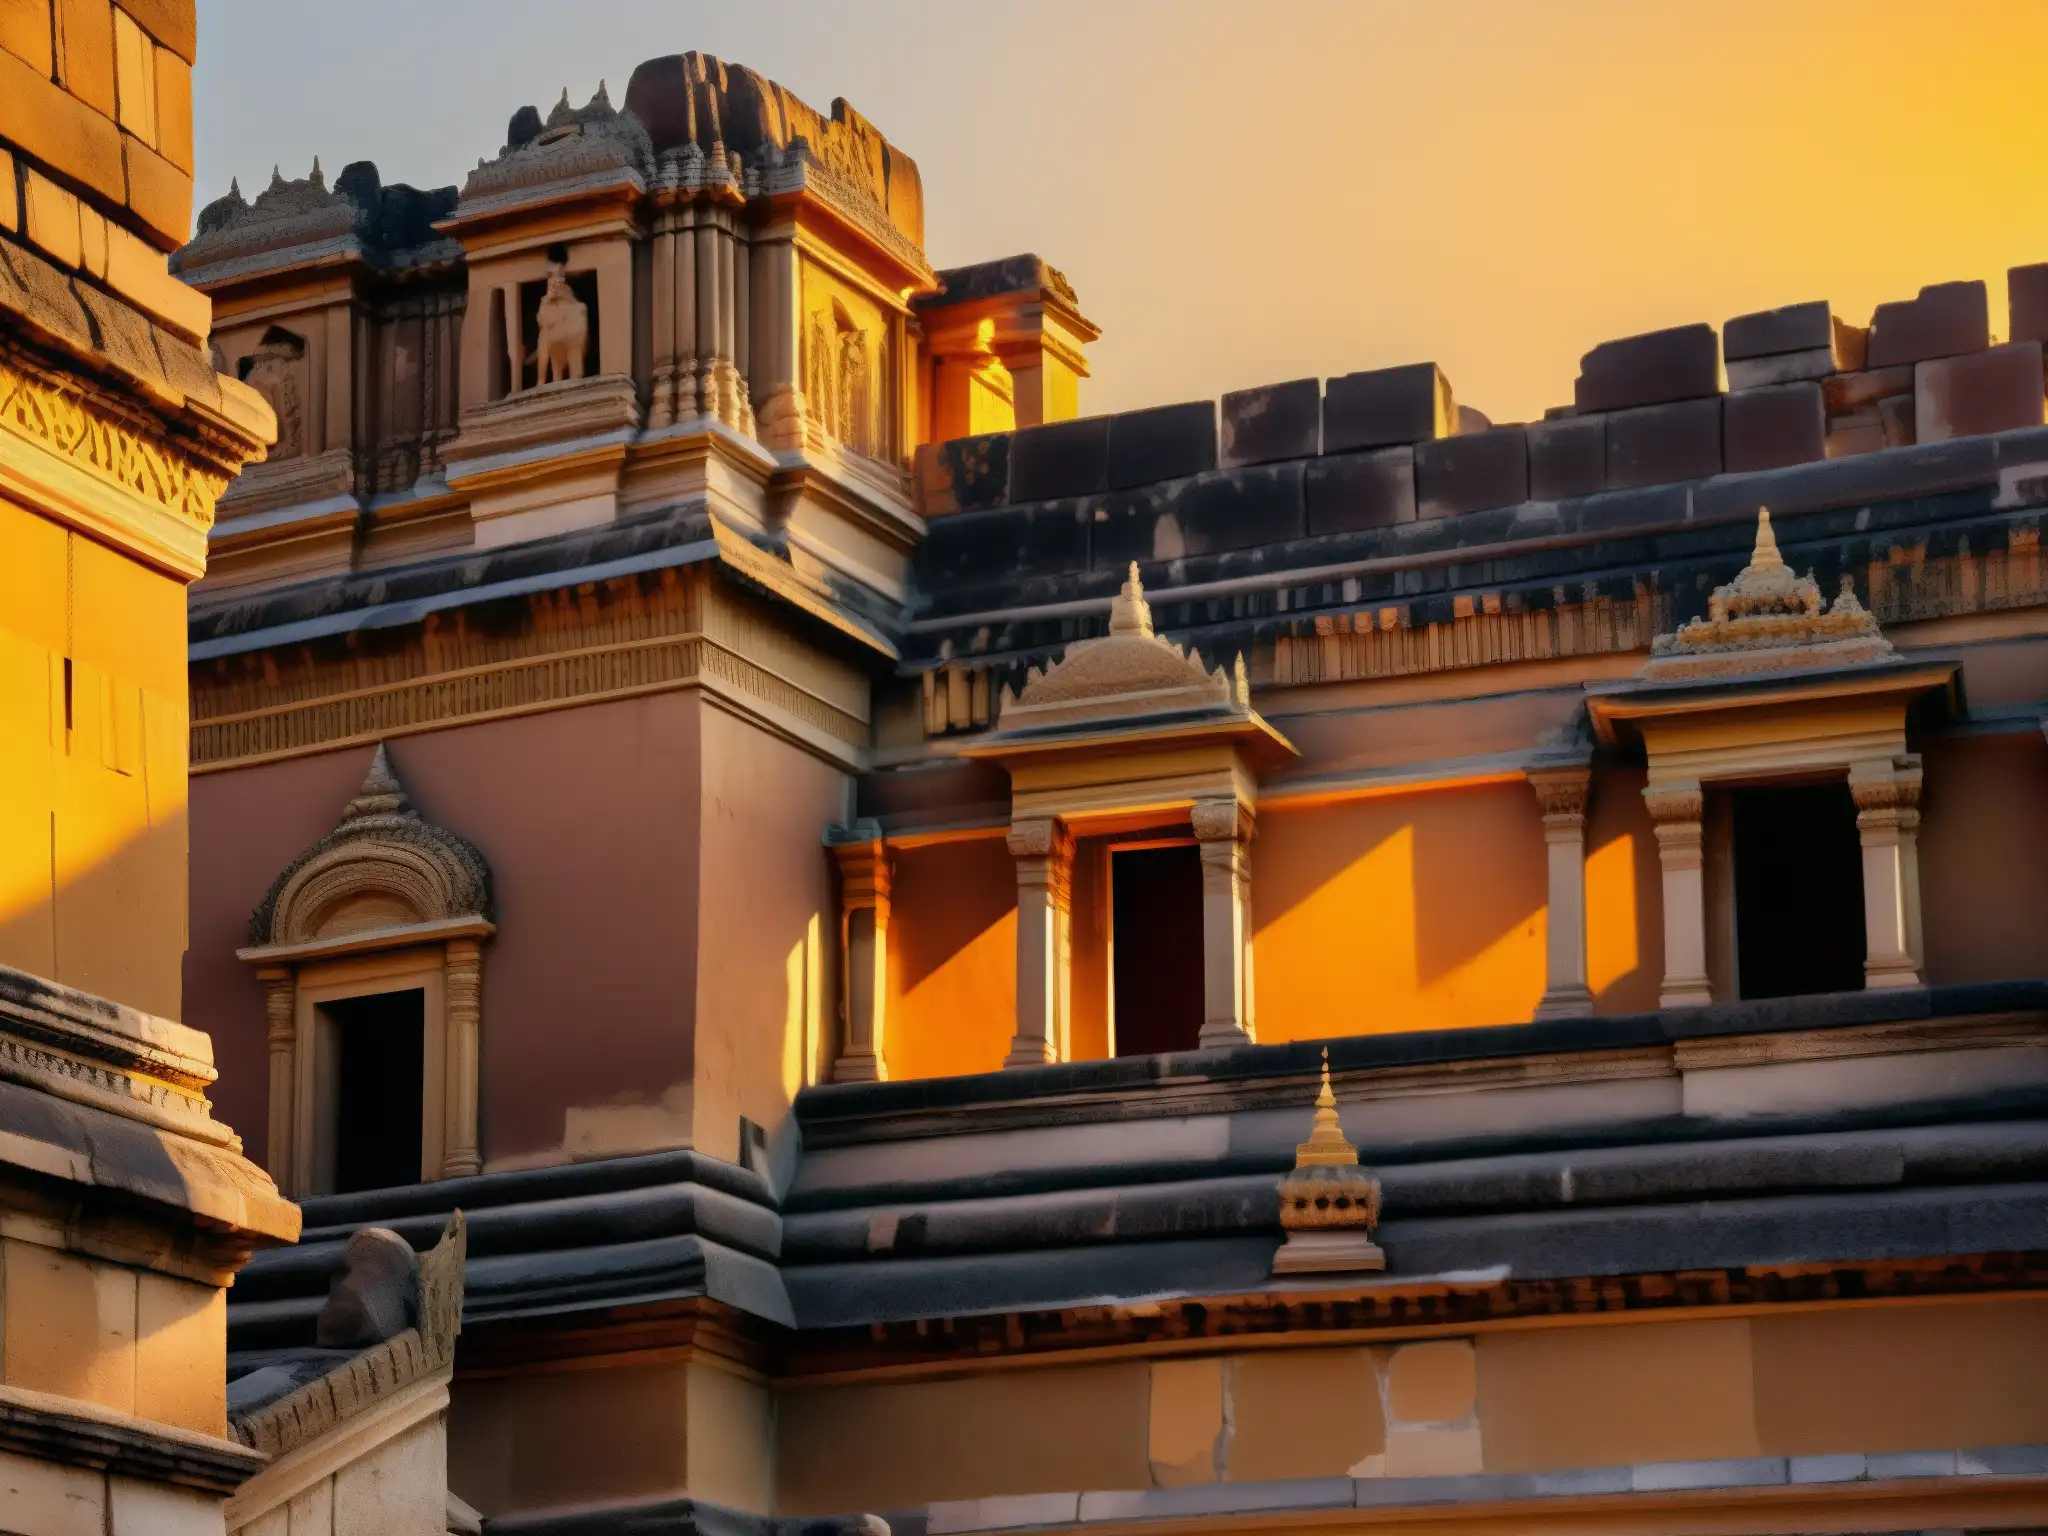 Ruinas del palacio del Rey Vikramaditya bañadas en la luz dorada del atardecer, evocando la leyenda y los espíritus misteriosos de la verdad